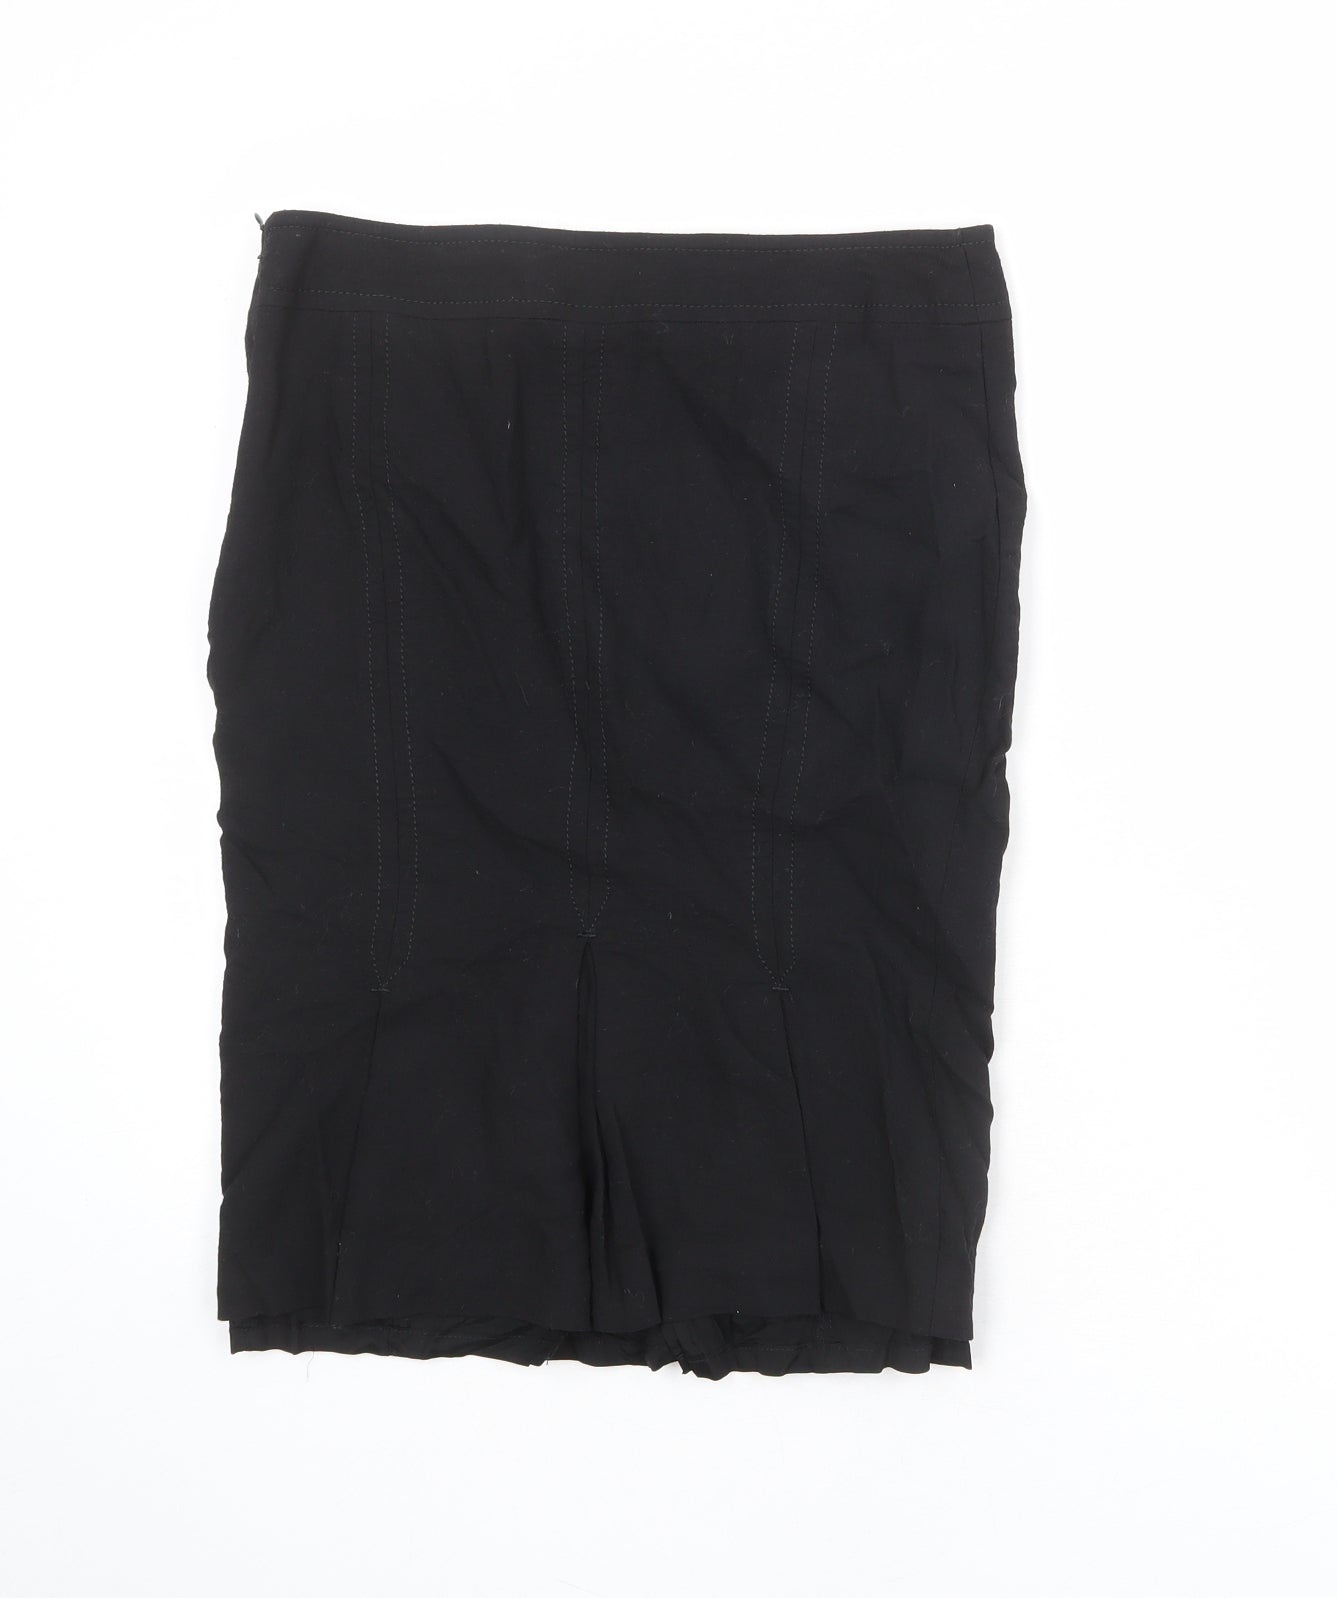 Karen Millen Womens Black Wool A-Line Skirt Size 12 Zip